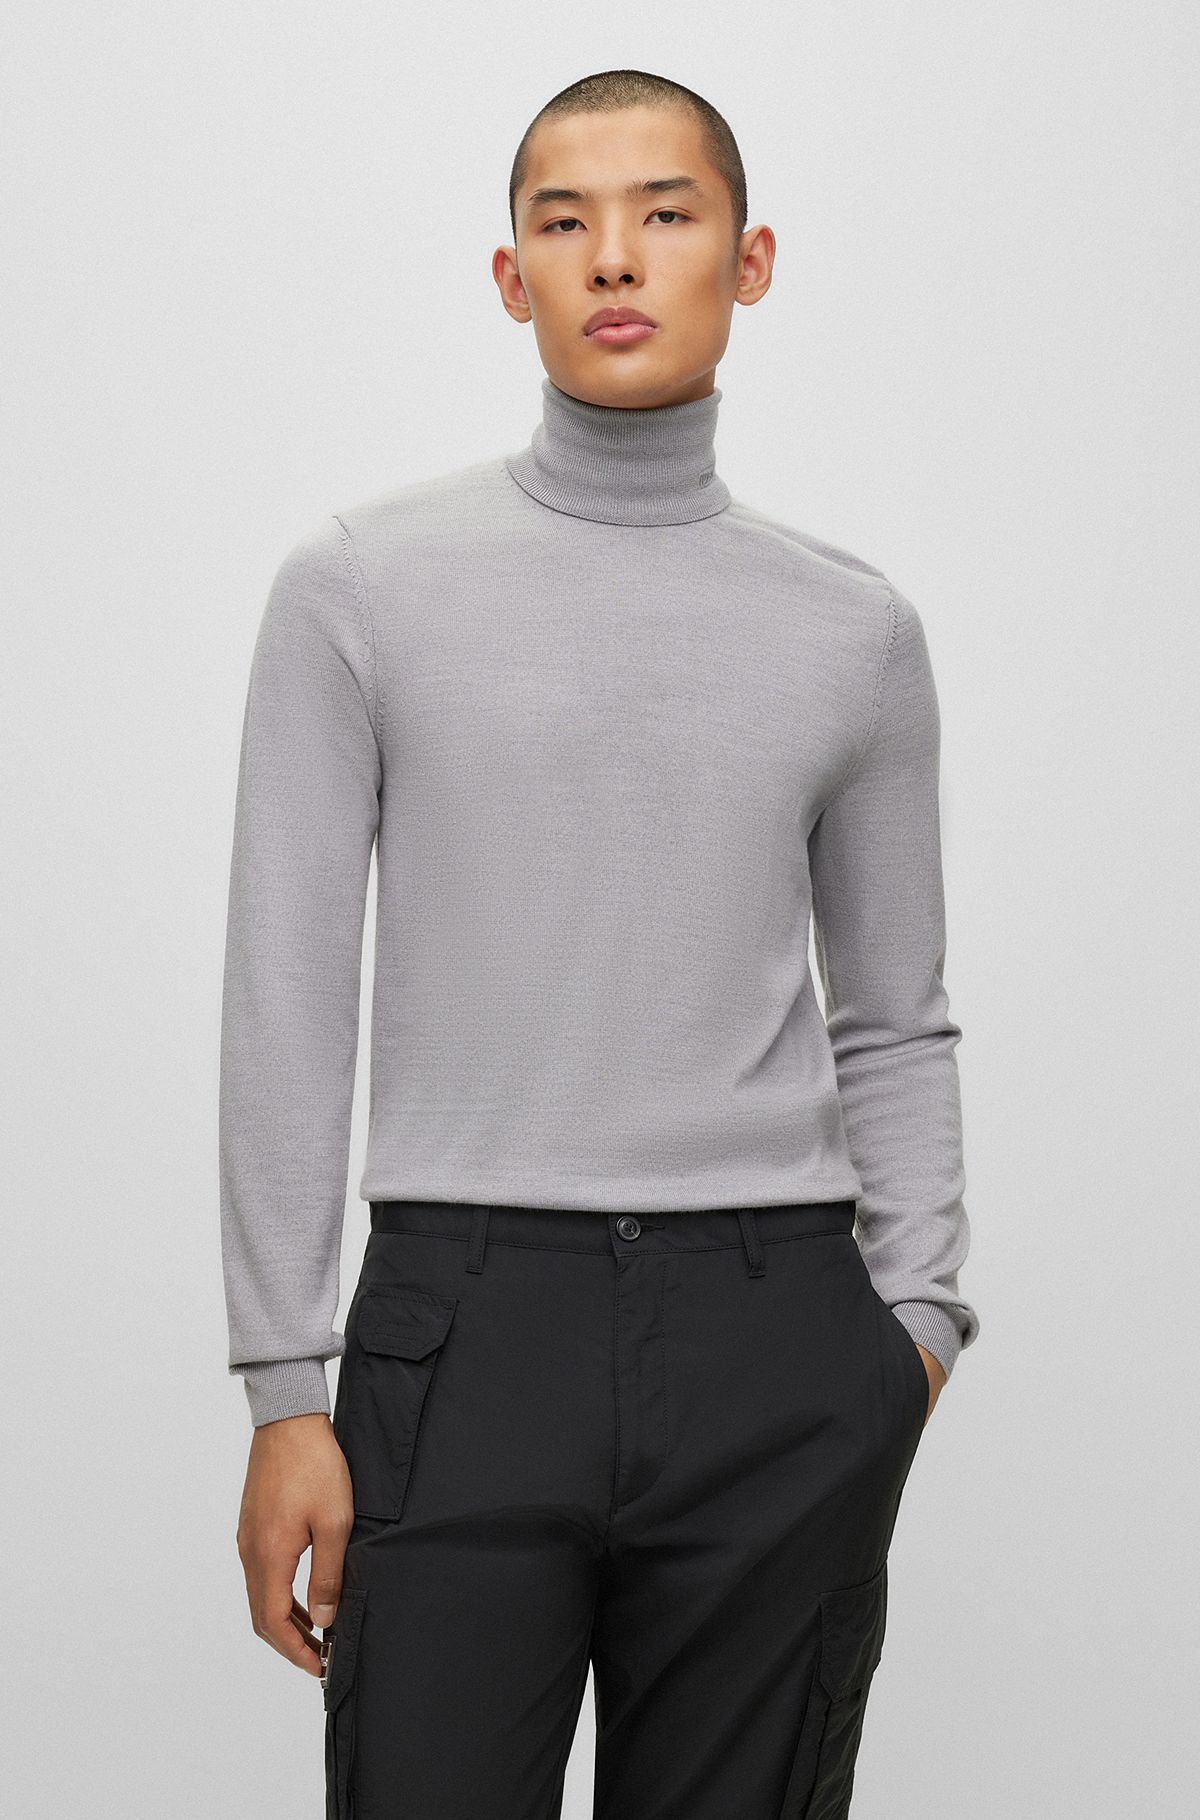 Buy Men Grey Turtleneck Pullover online